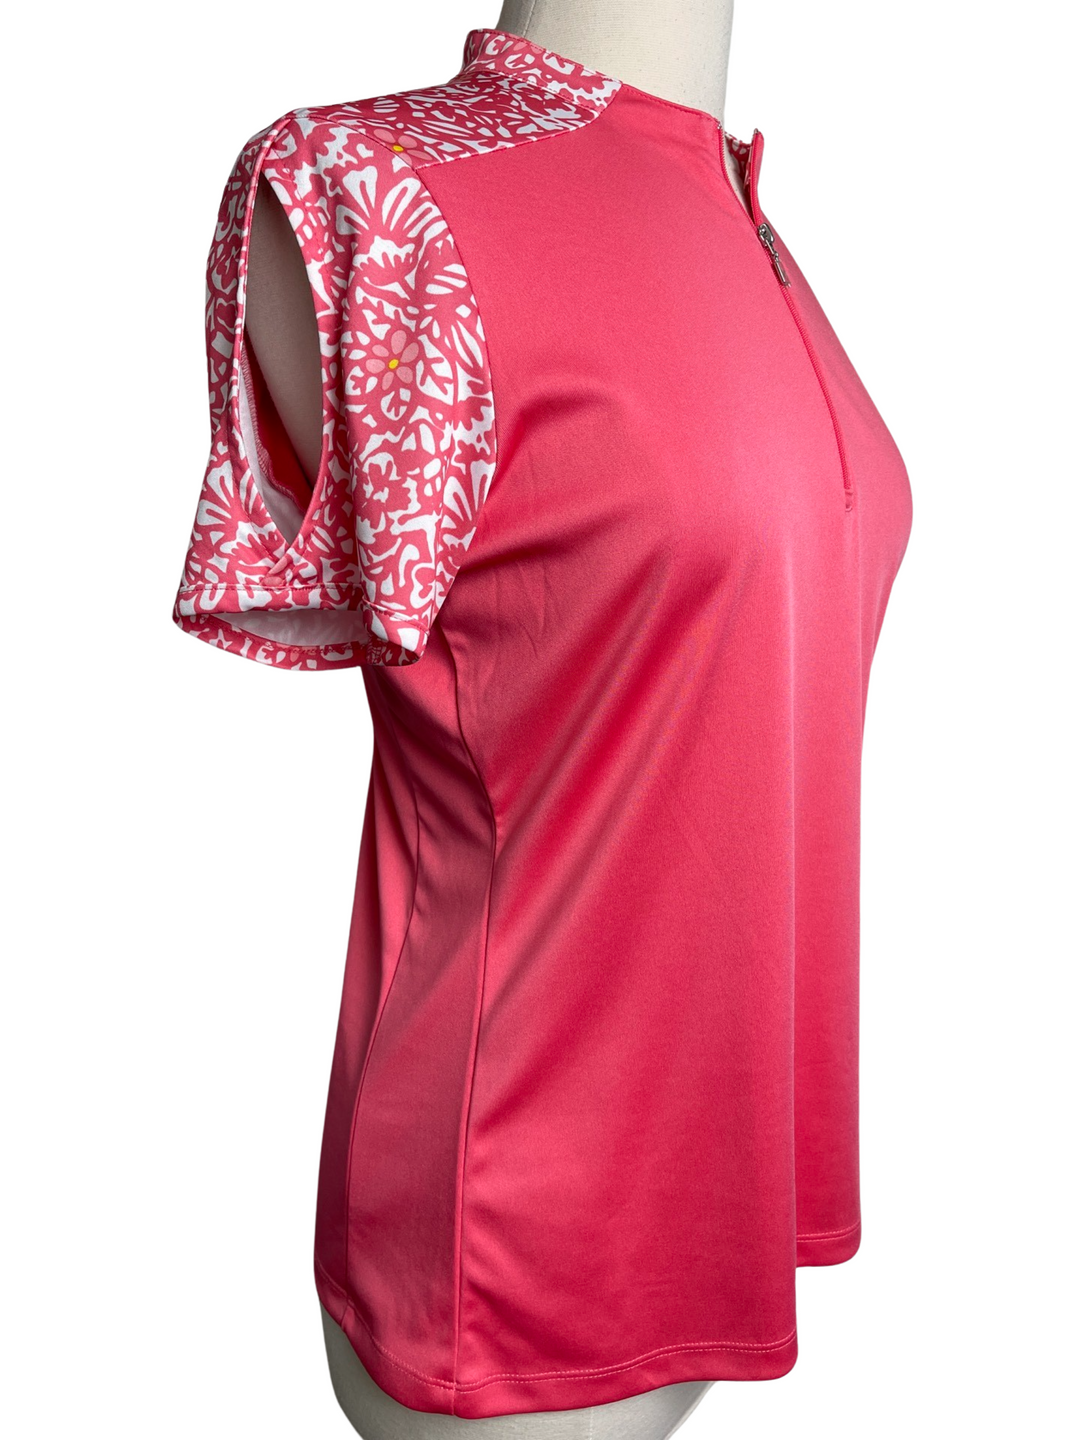 Callaway Pink Floral Short Sleeve Top- Large - Skorzie